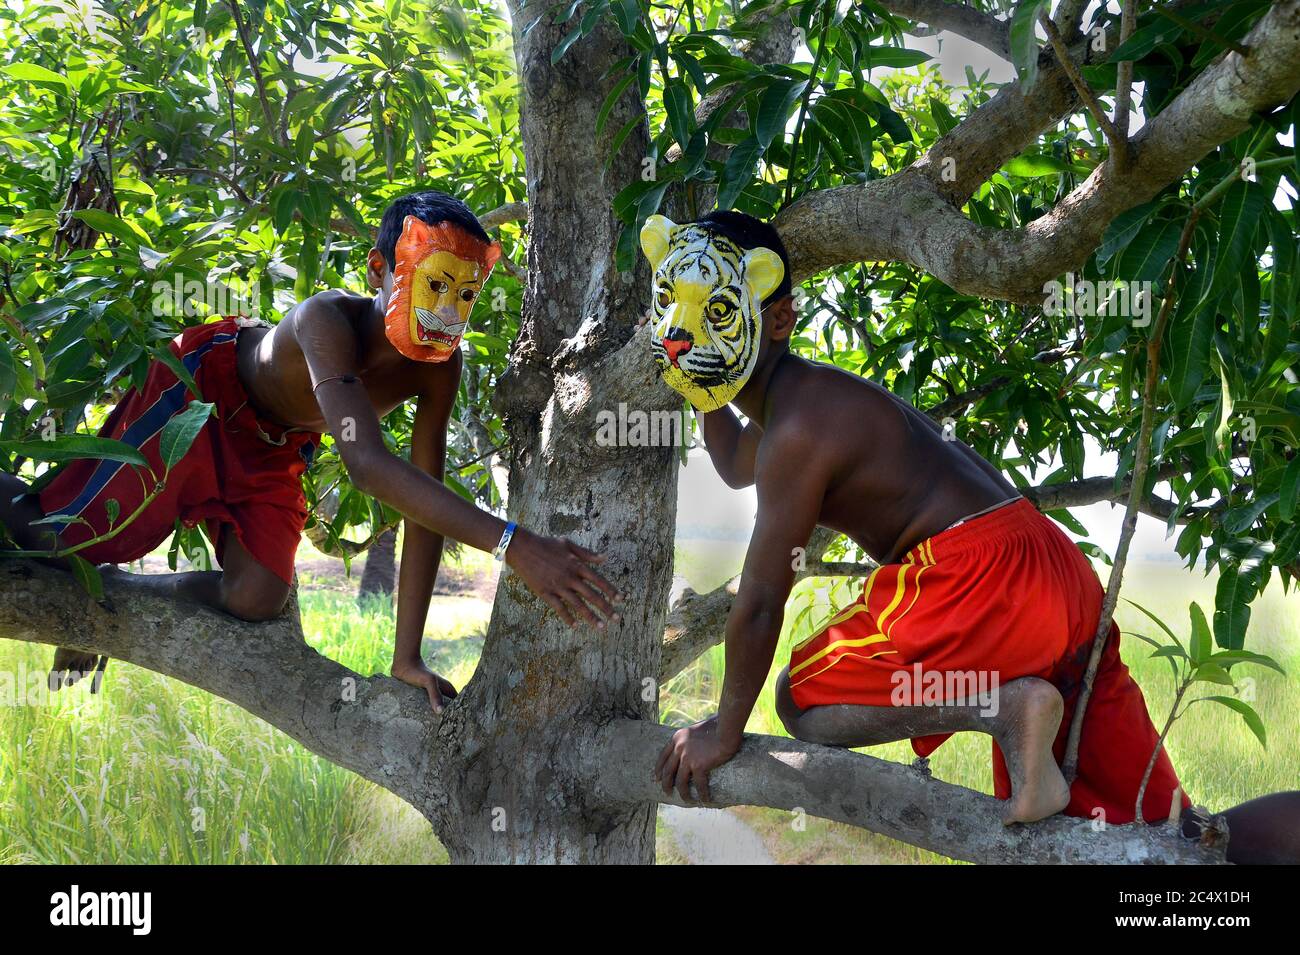 Il remoto villaggio di bambini piccoli stanno giocando con la maschera tigre per il messaggio alla gente del villaggio per salvare la tigre a Sundarban, India Bengala Occidentale. Foto Stock